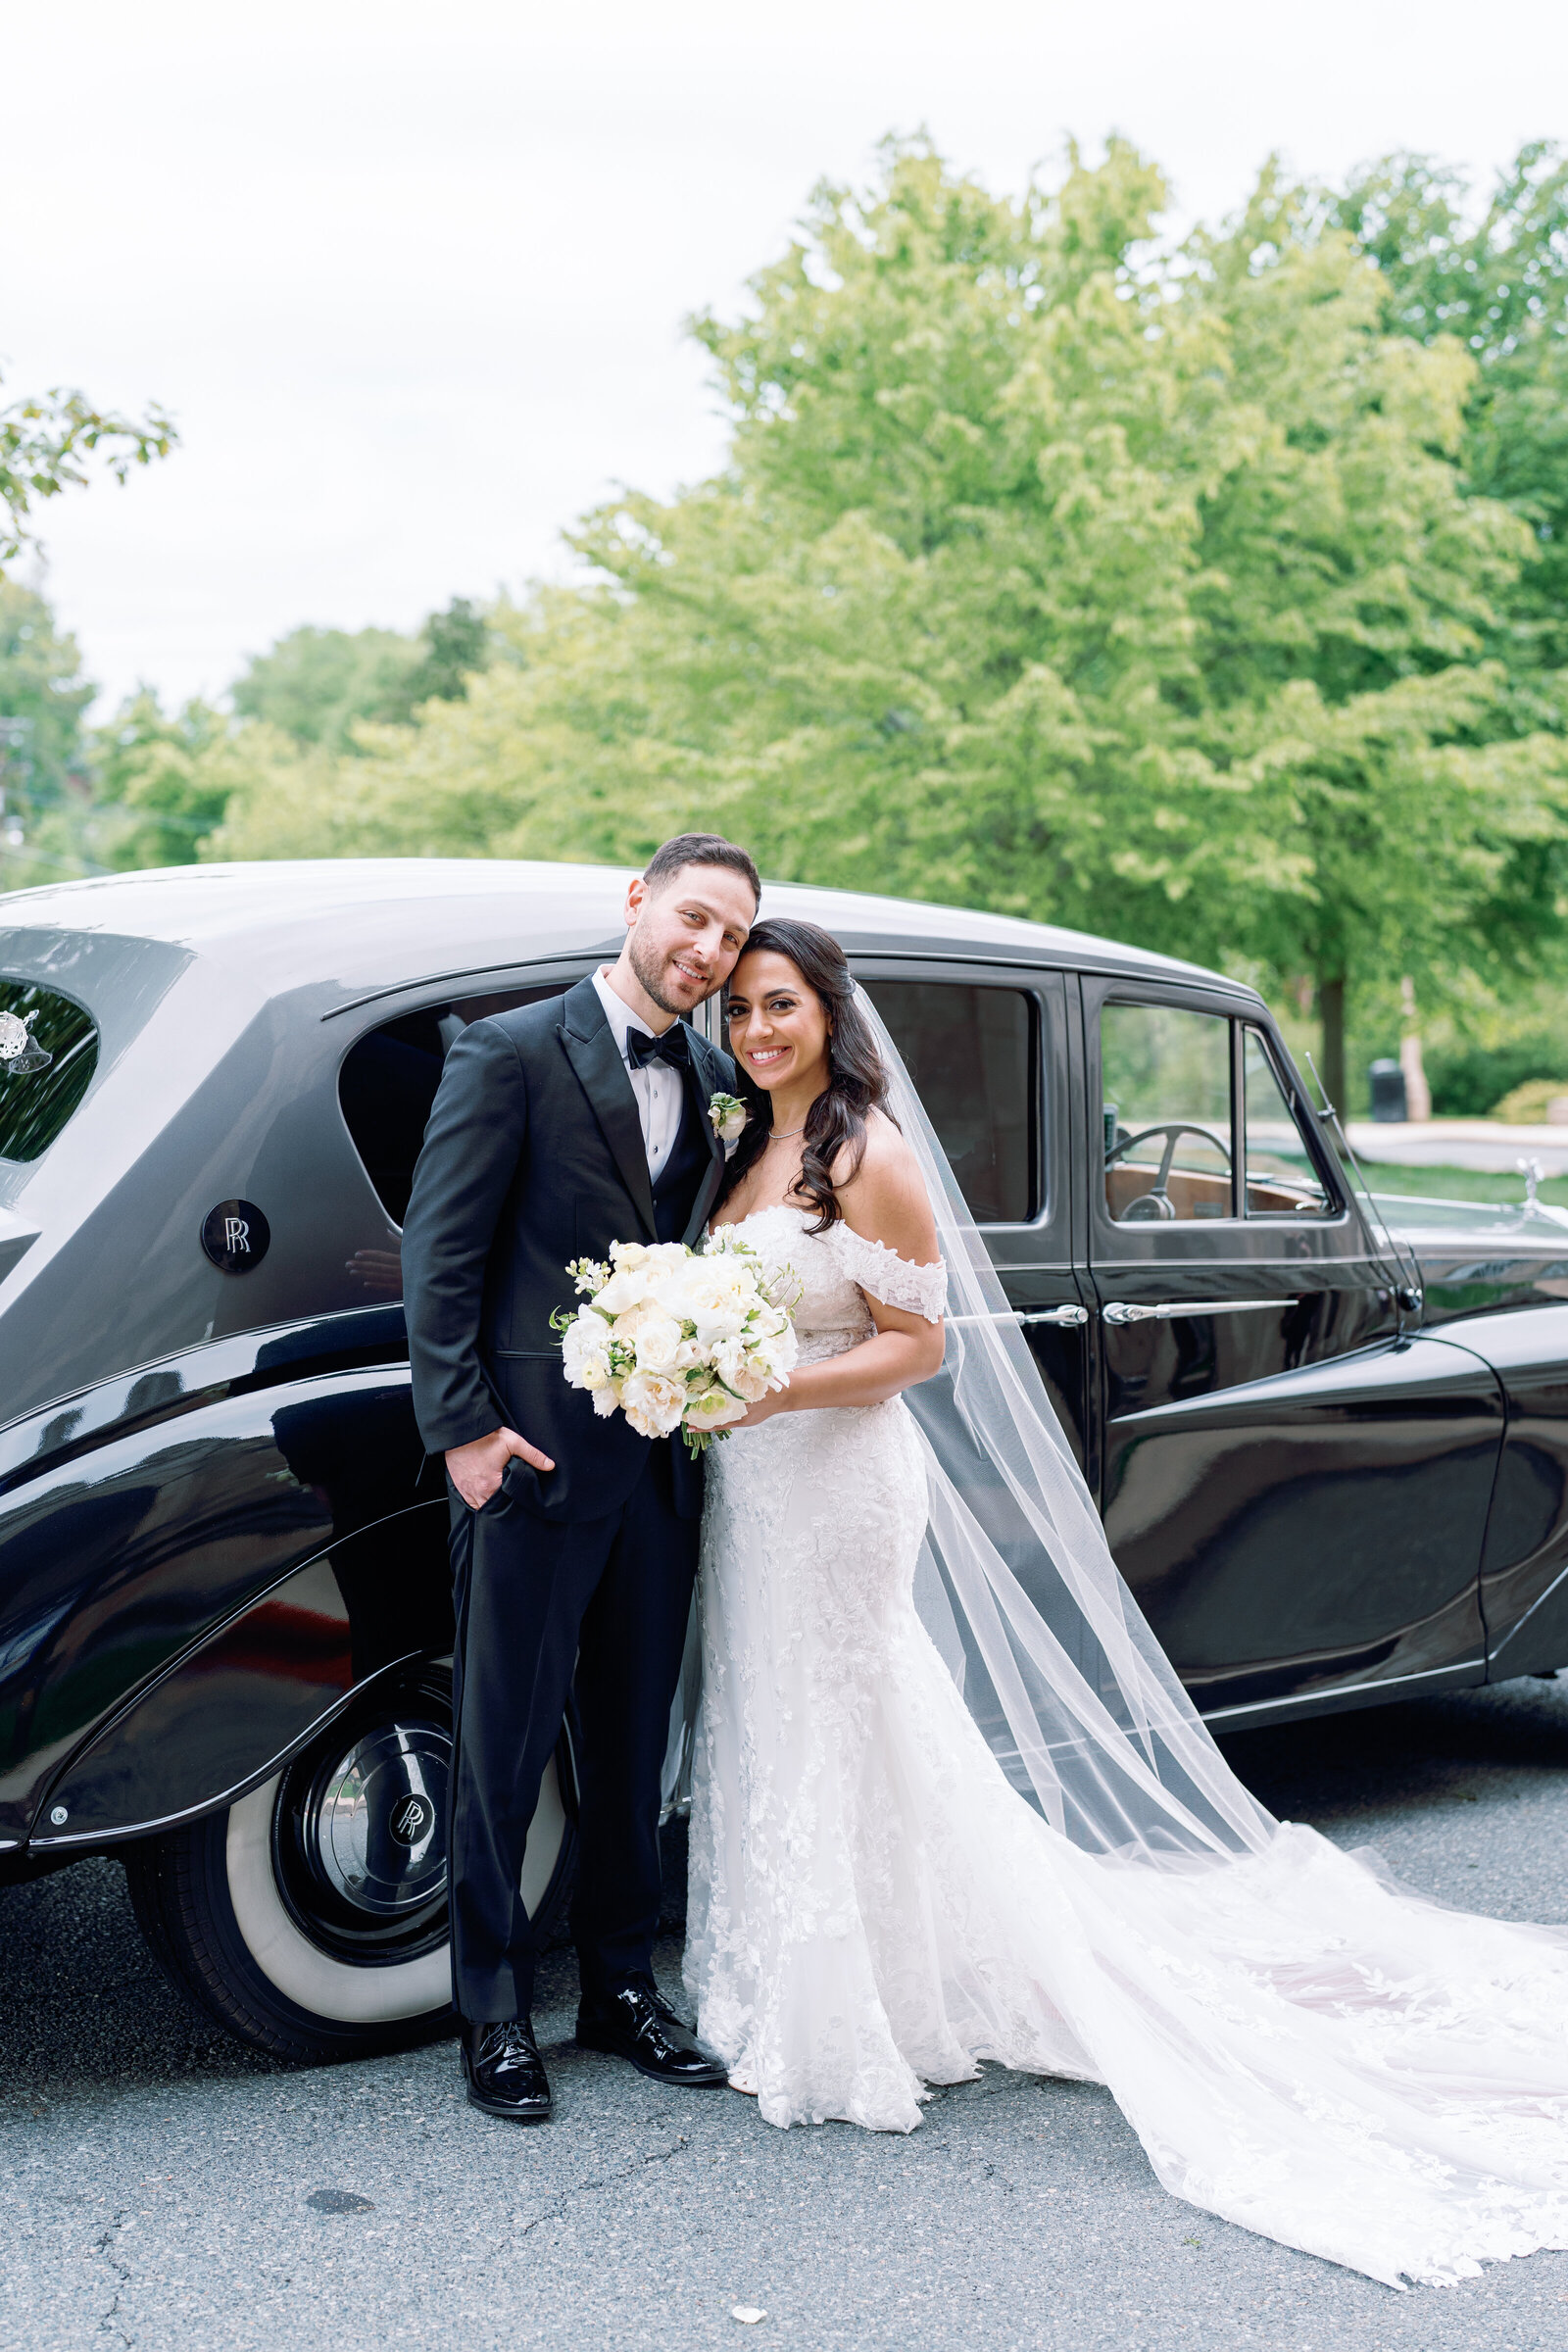 Klaire-Dixius-Photography-Salamander-DC-Washington-DC-wedding-national-cathedral-st-sophias-marios-suzy-bride-groom-8